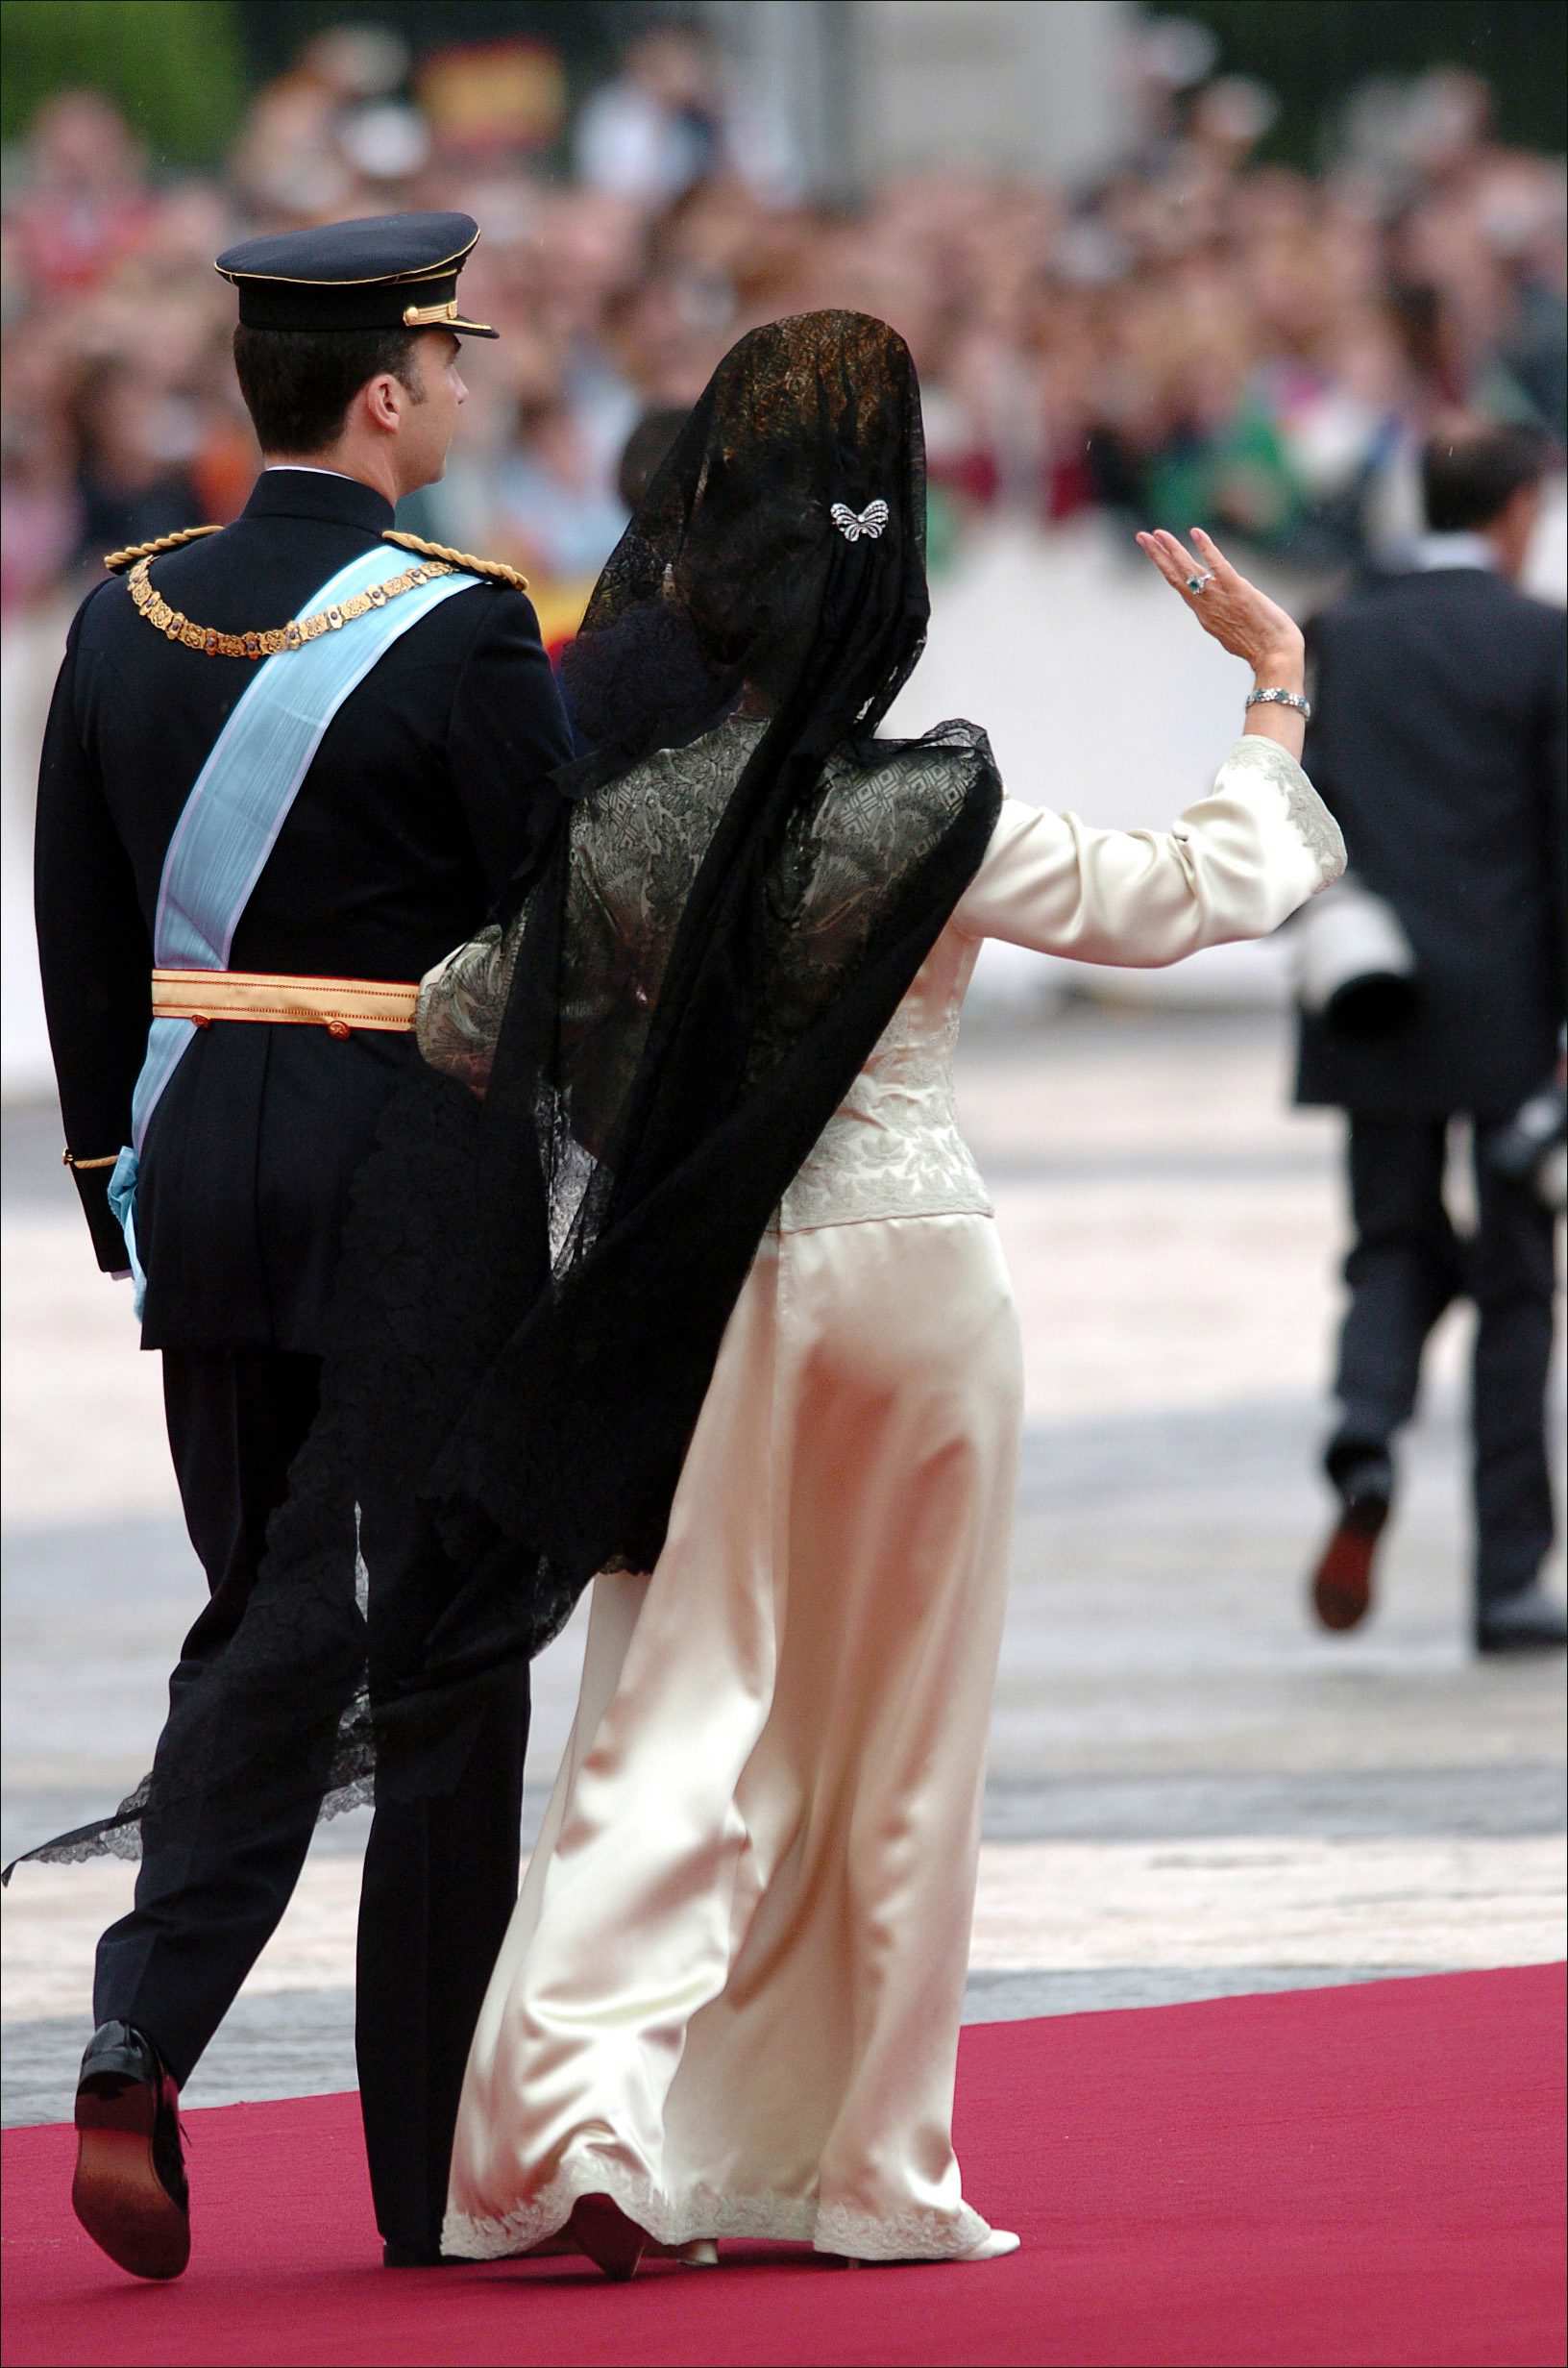 La reina Sofía lució este broche en la boda de su hijo para sujetar la mantilla de su cabello